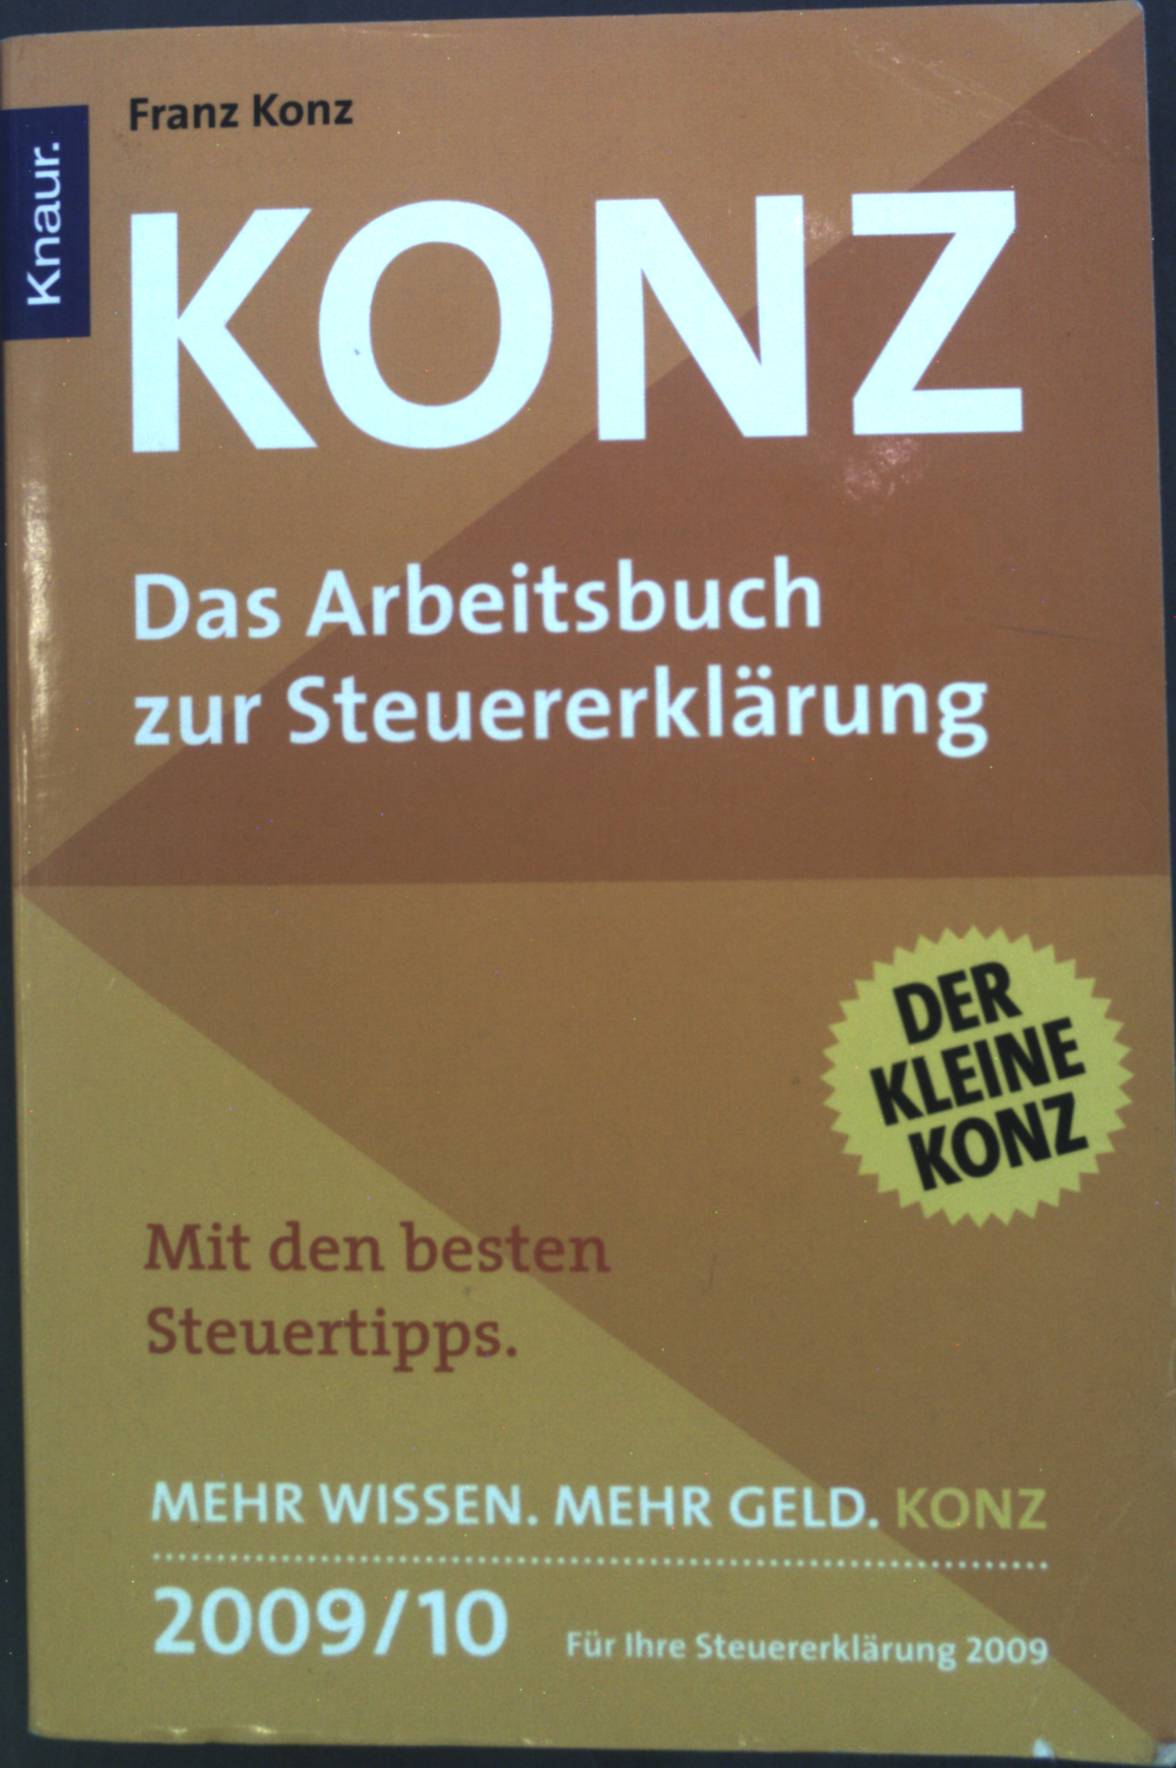 Konz - das Arbeitsbuch zur Steuererklärung 2009, 2010. - Konz, Franz und Friedrich Borrosch